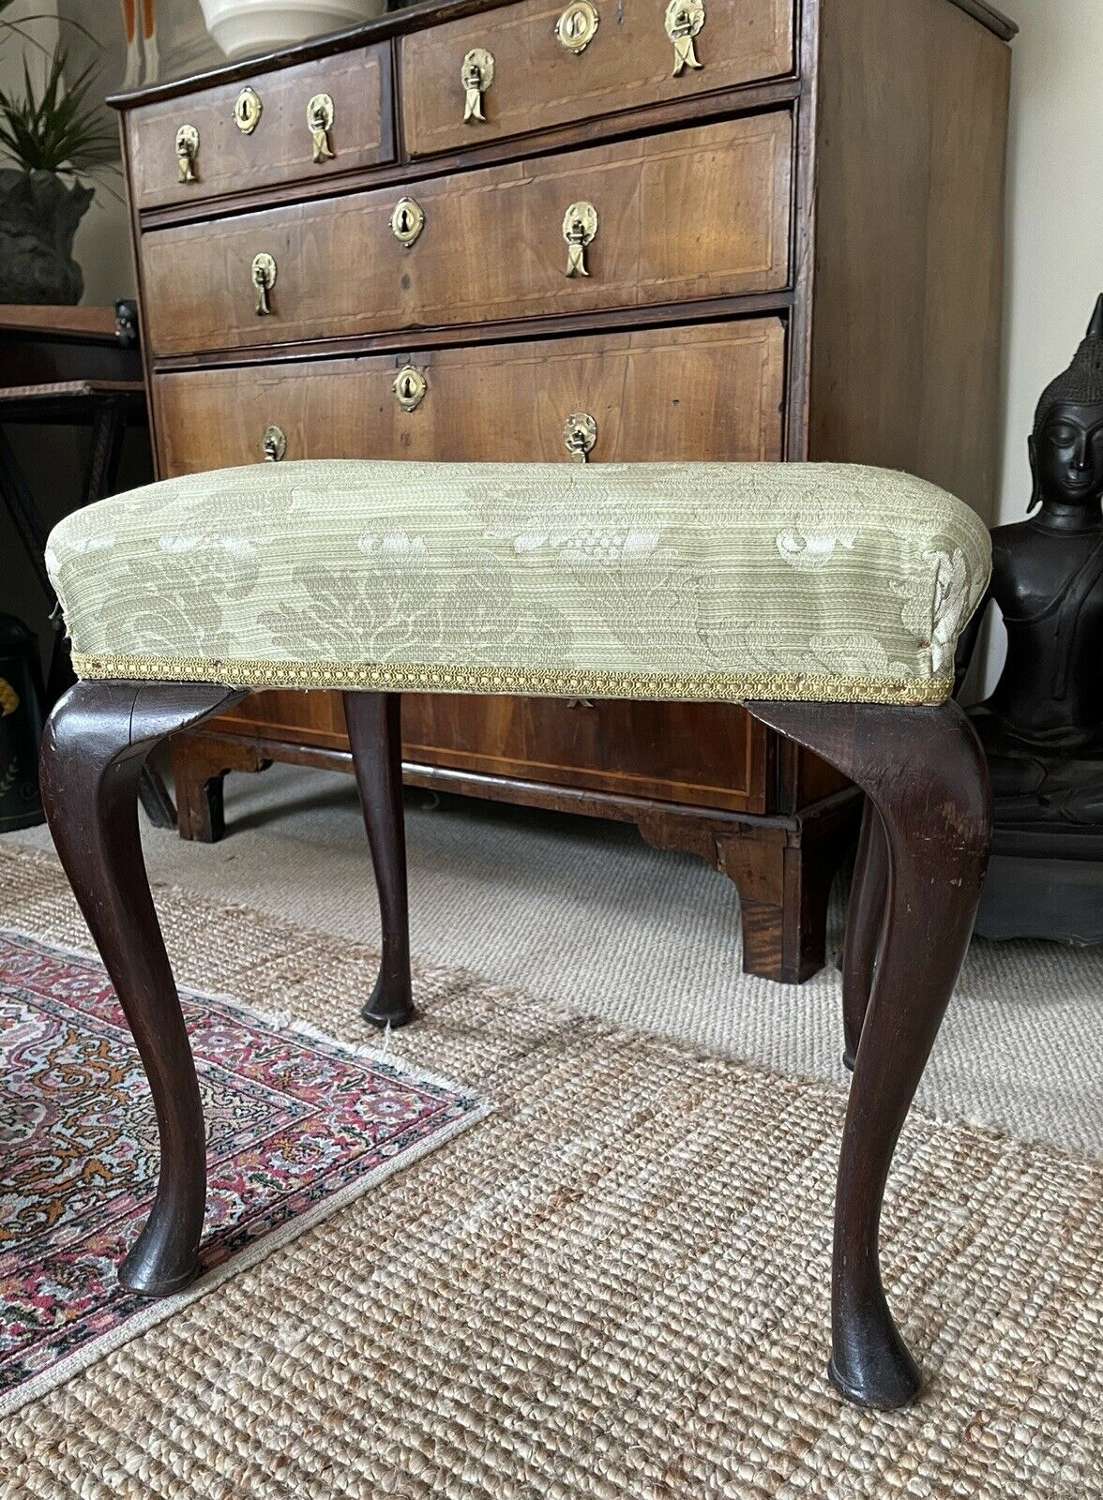 19th Century mahogany foot stool